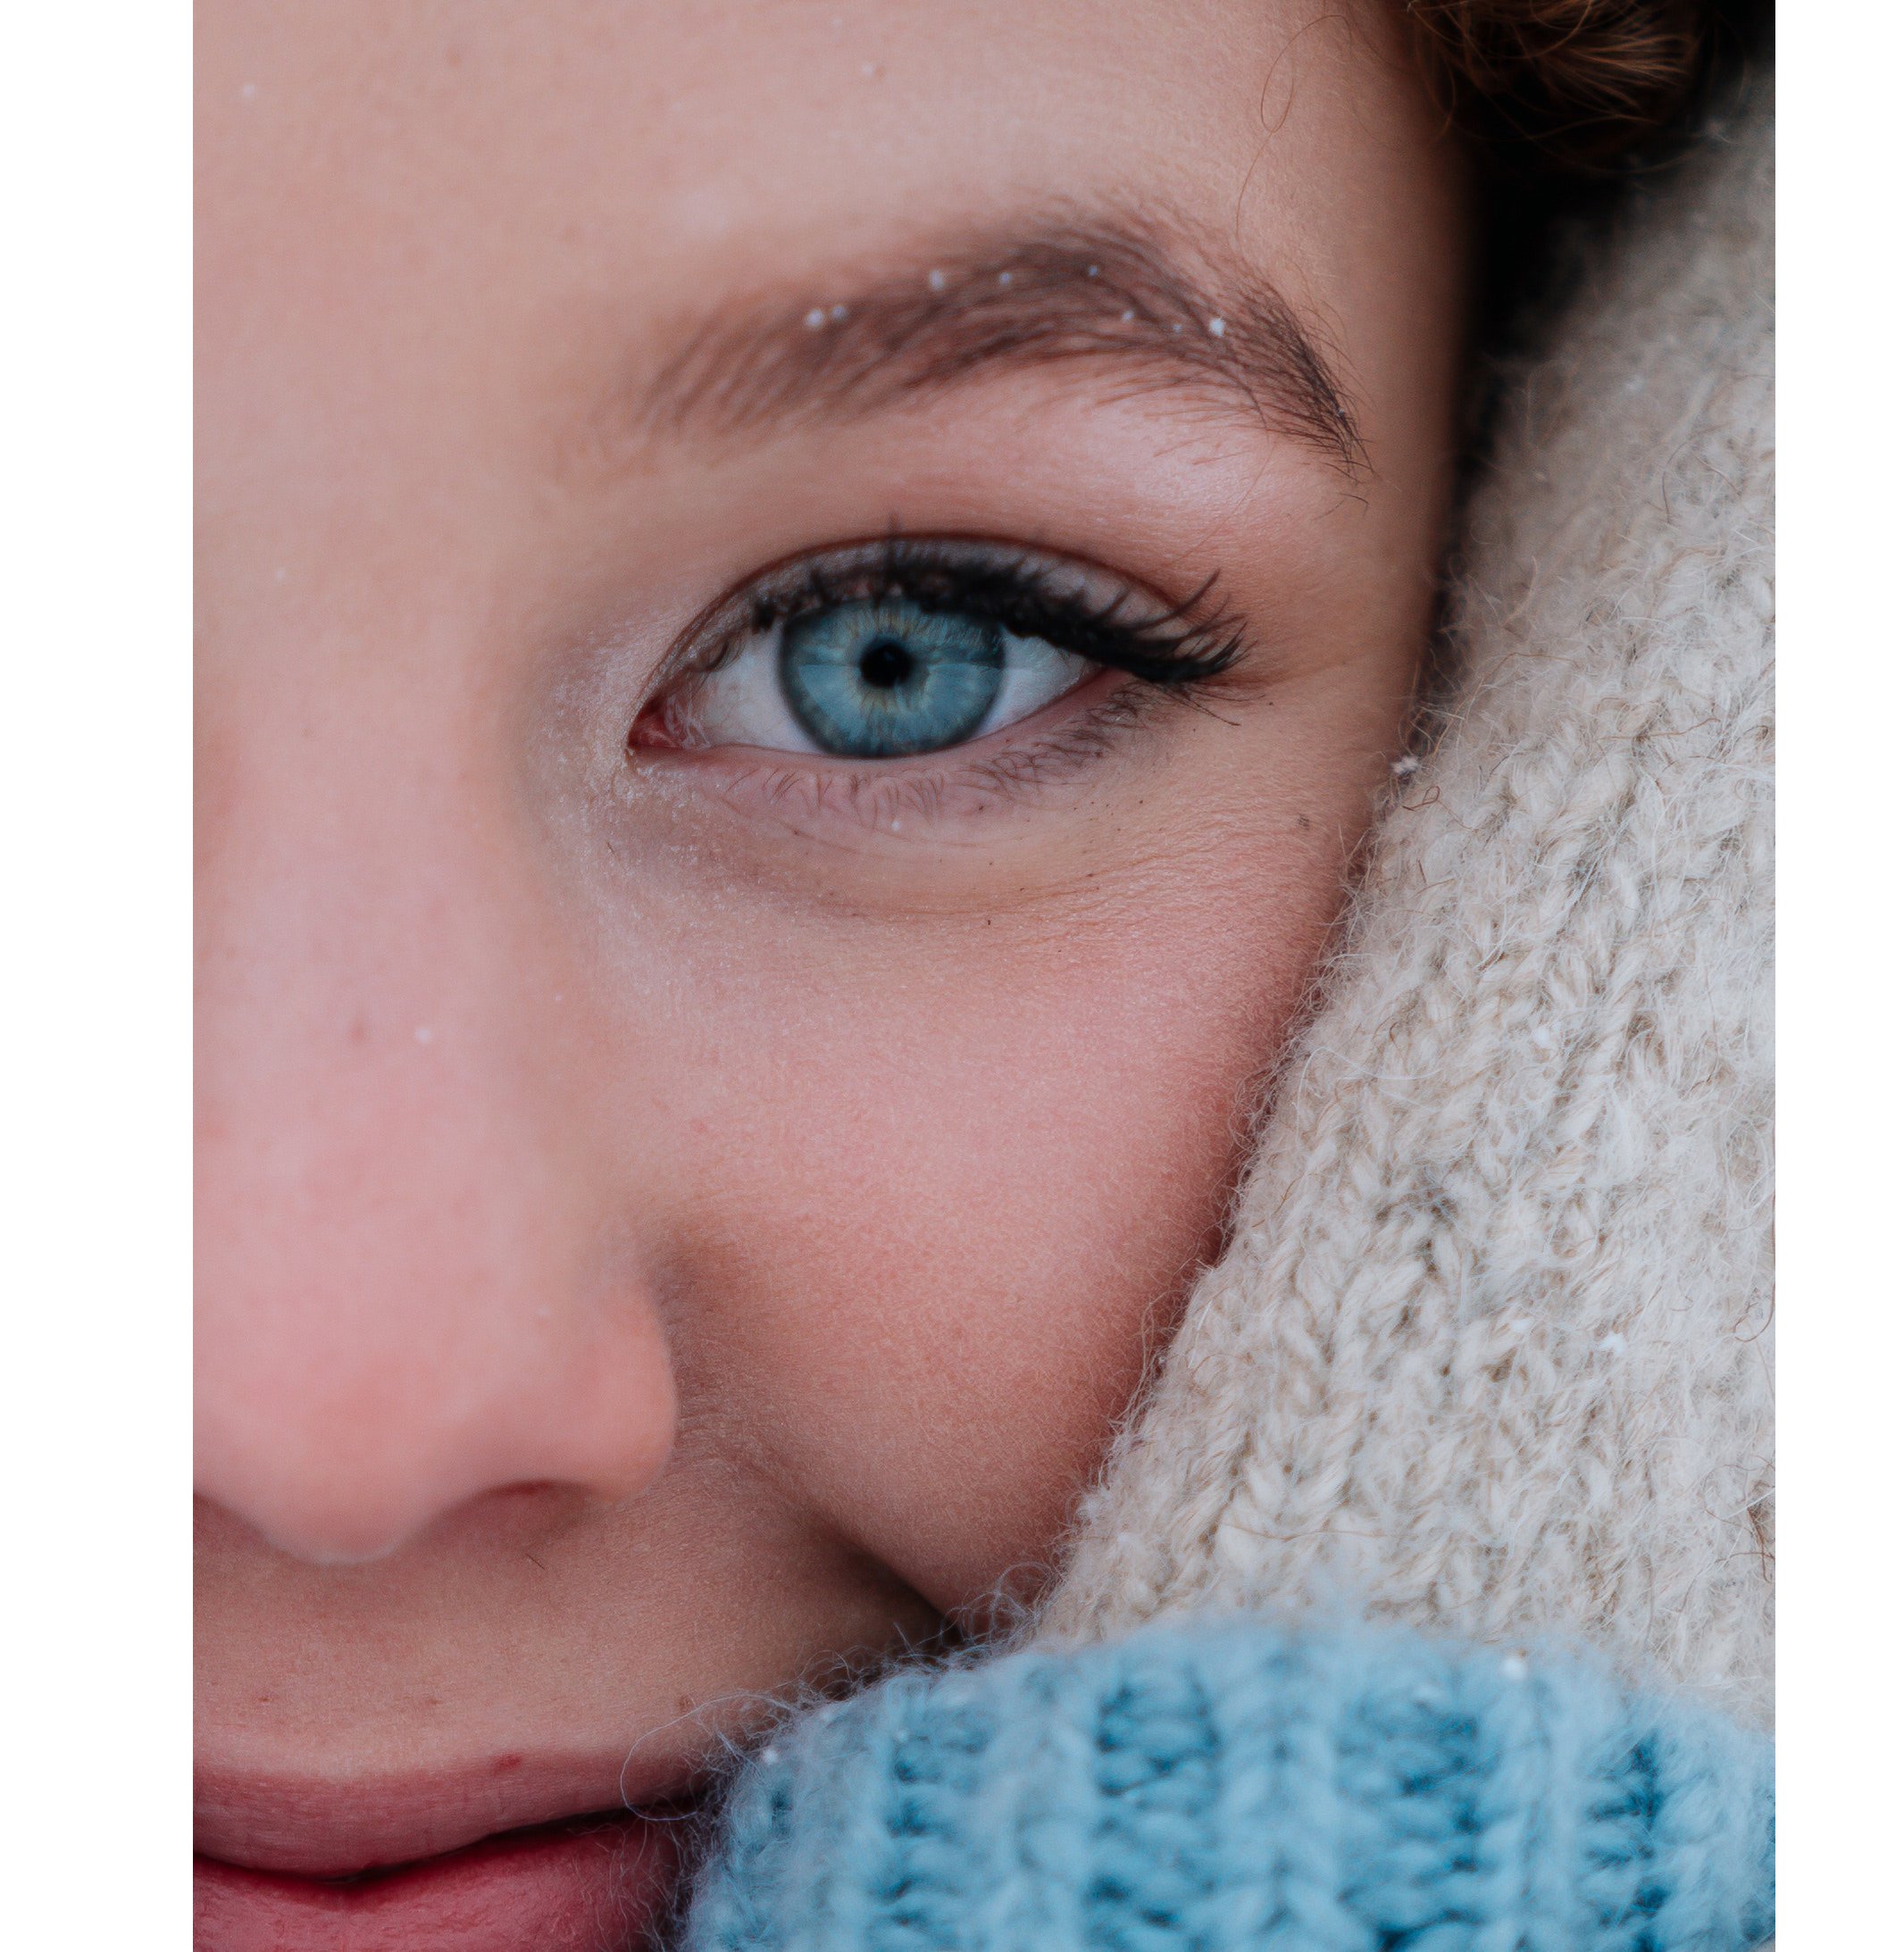 Das Bild zeigt eine Person in Nahaufnahme mit strahlend blauen Augen.